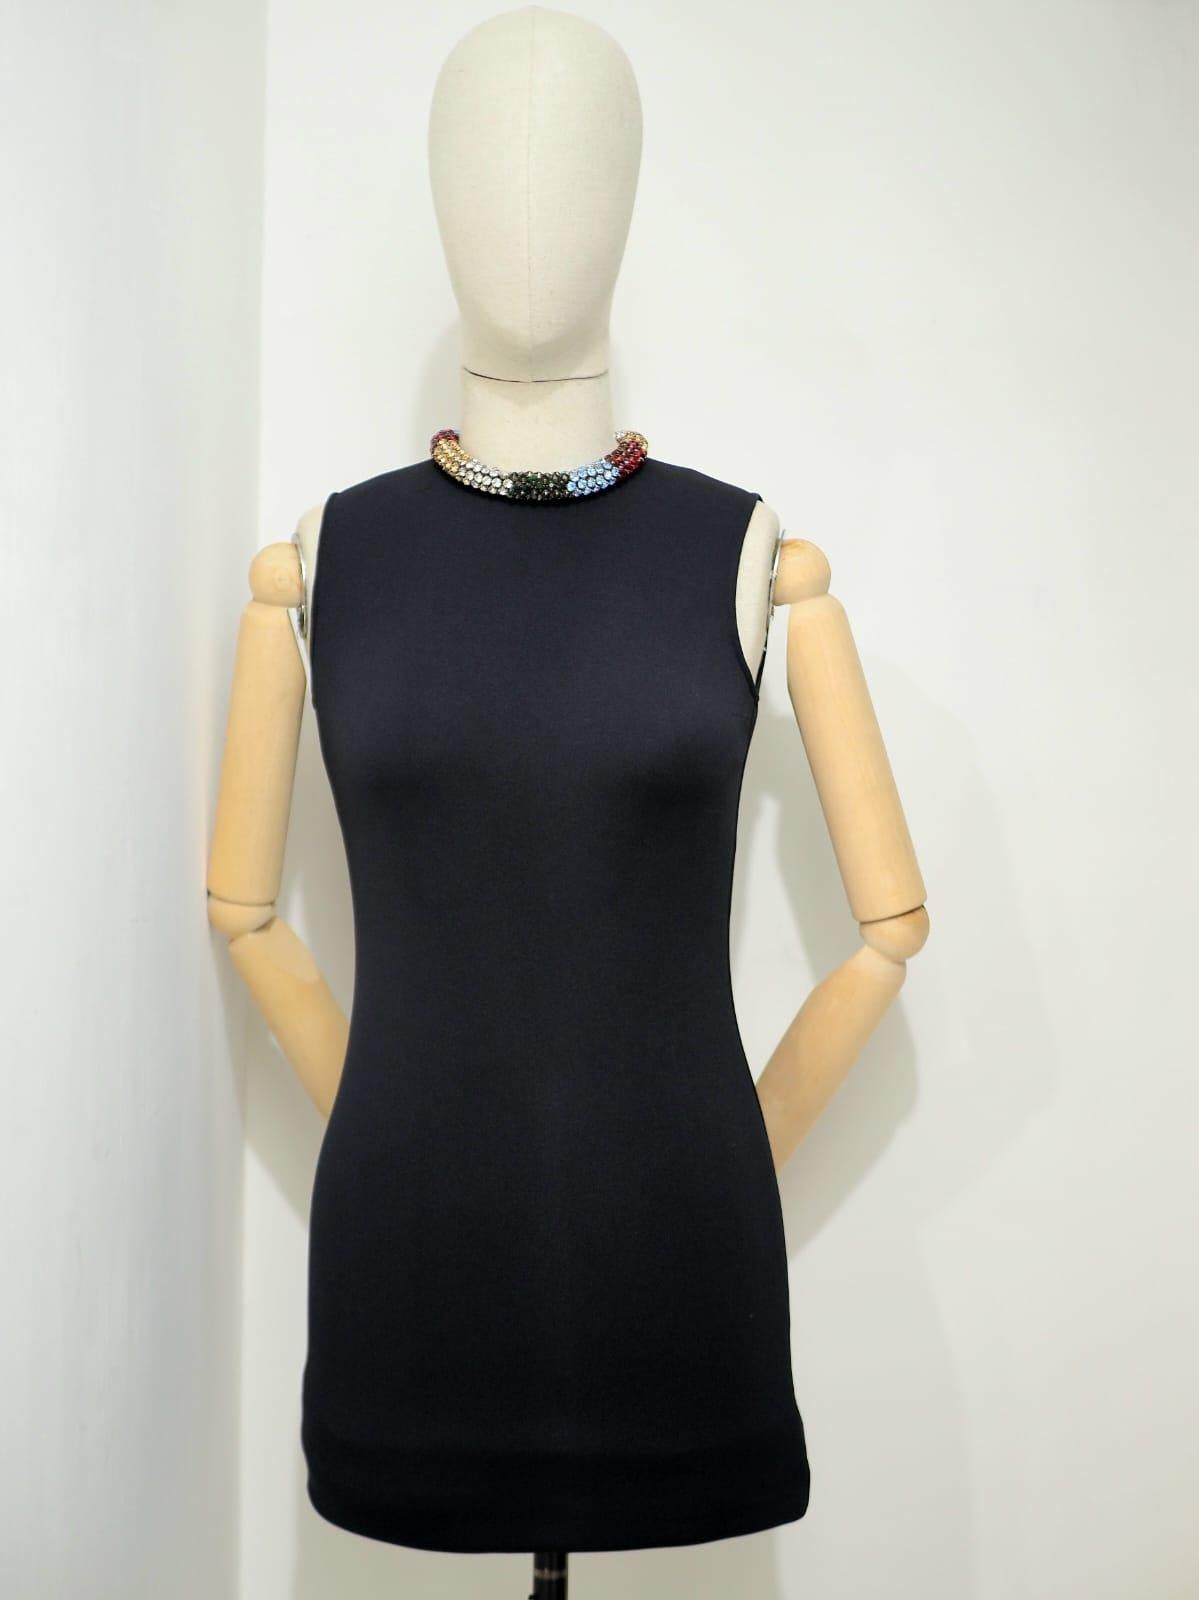 Alexander McQueen black with multicolour swarovski stones necklace dress In Good Condition For Sale In Capri, IT